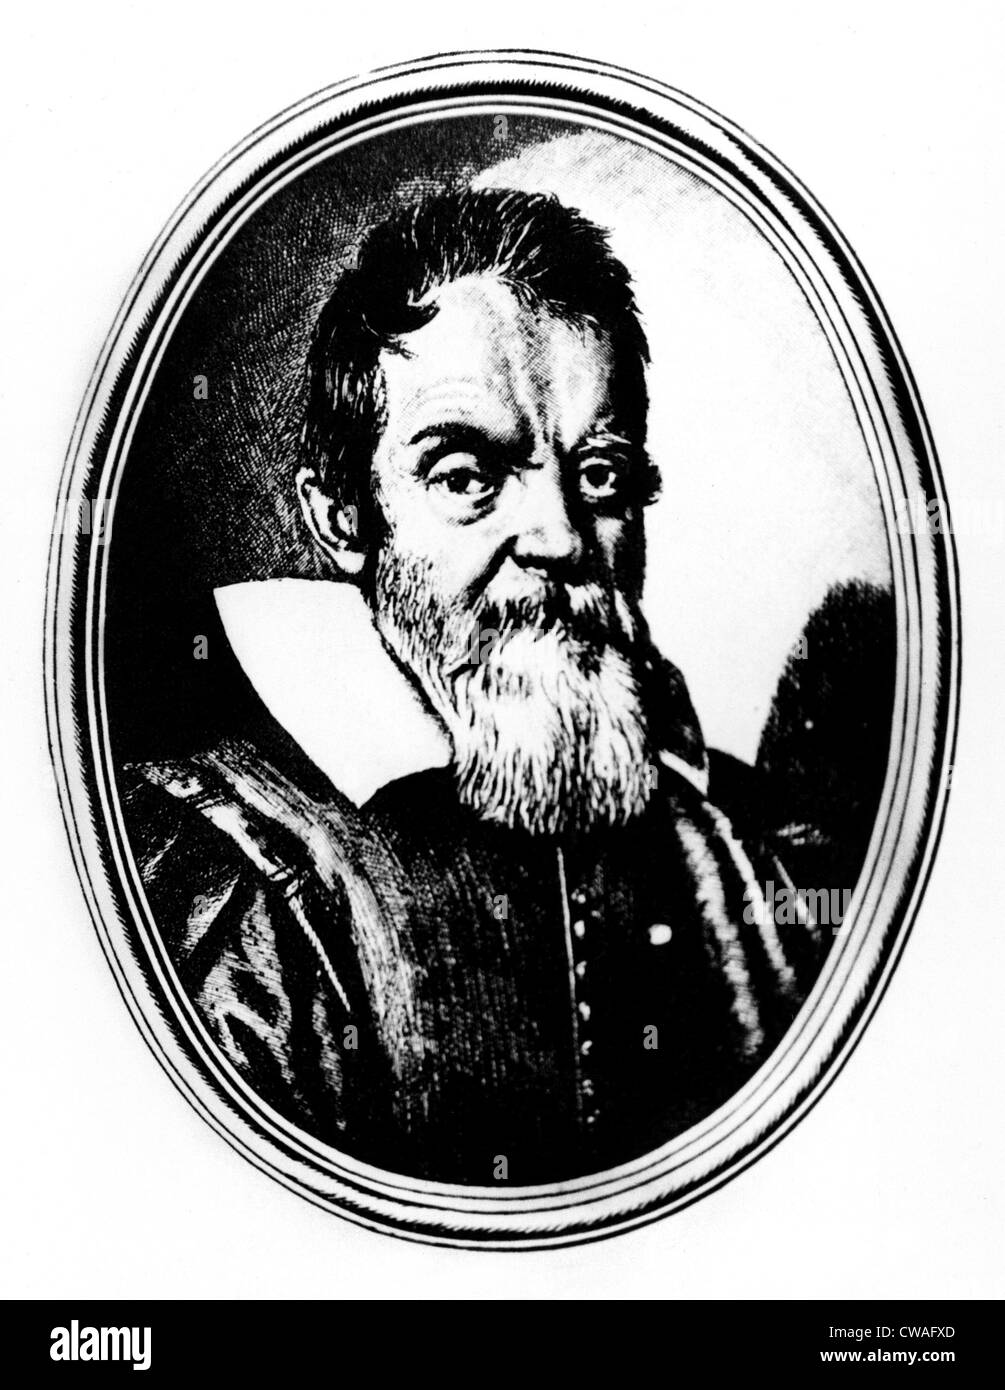 Galileo Galilei, 1564-1642. La cortesia: CSU Archivi / Everett Collection Foto Stock